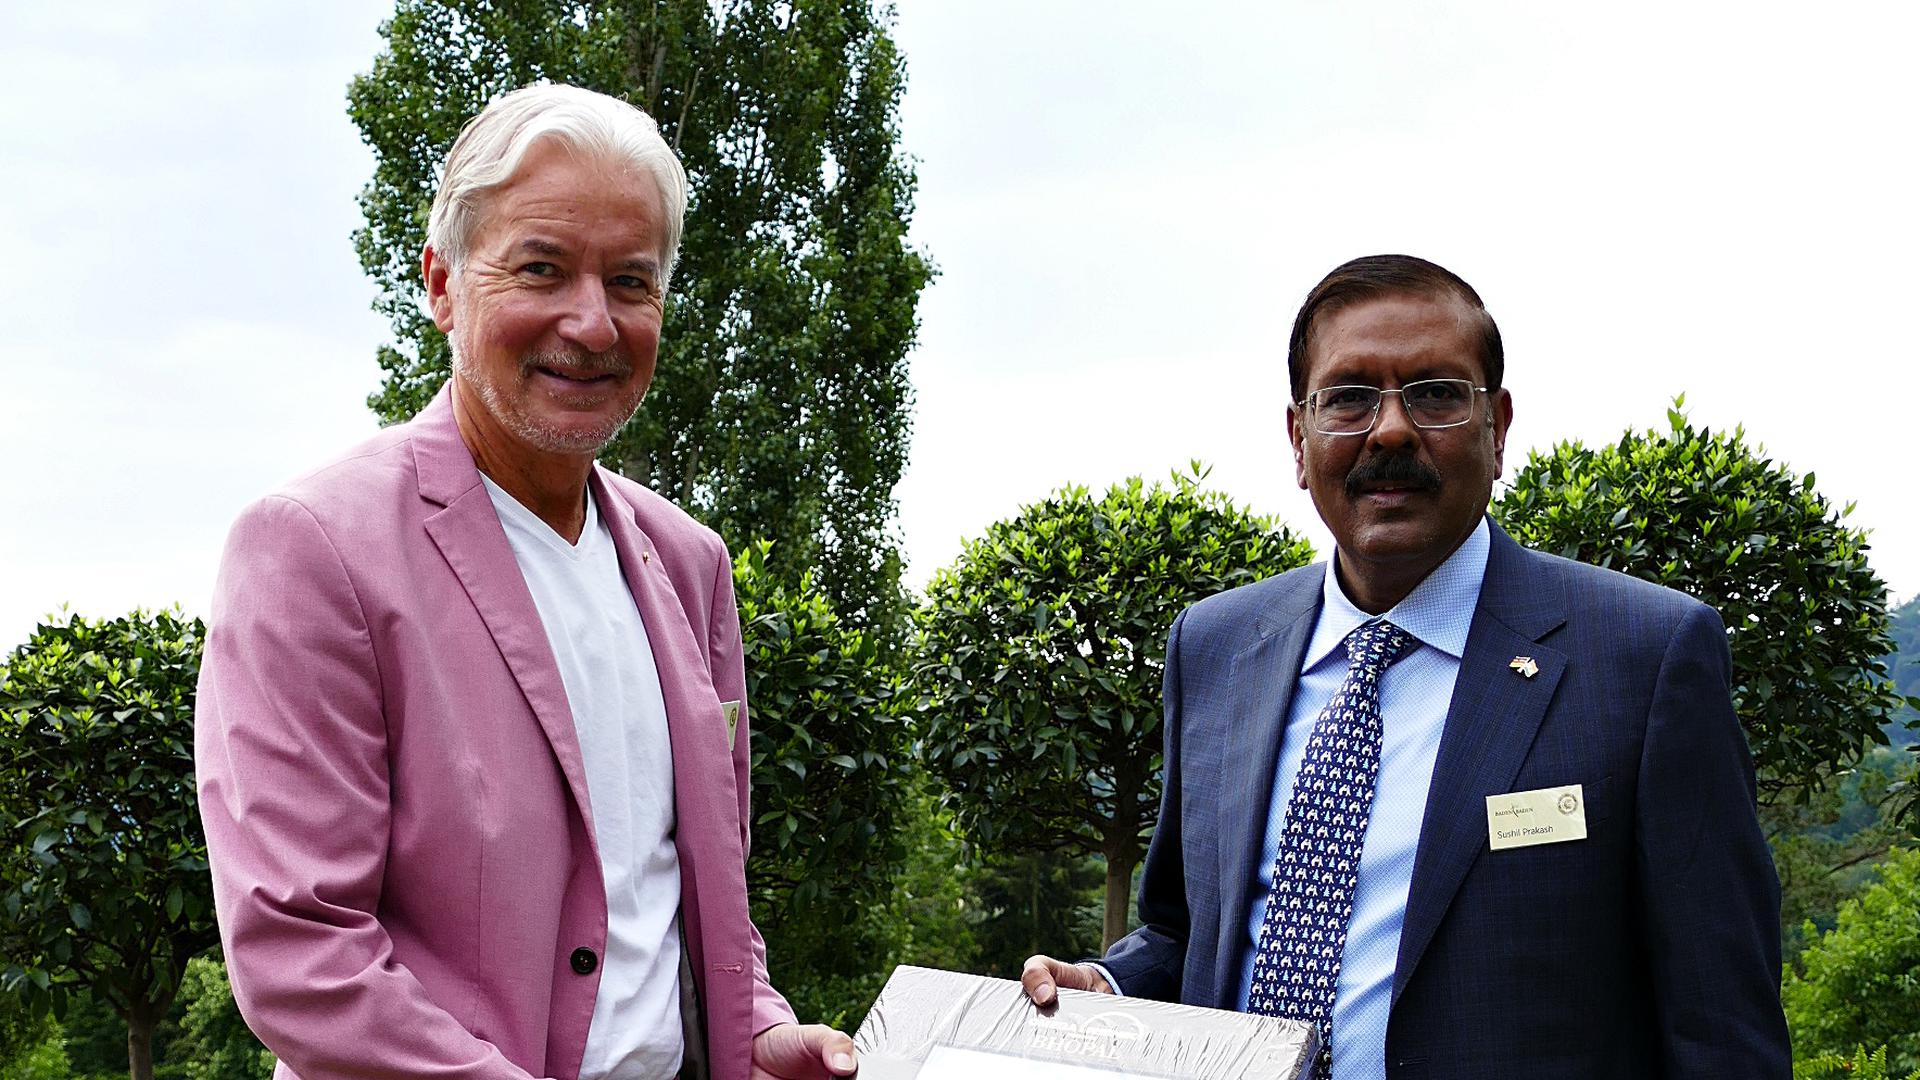 der indische Präsident der internationalen Jury, Sushil Prakash, ist ersmals auf dem Beutig und überreicht OB Späth ein Buch über seine Heimatstadt Bhopal